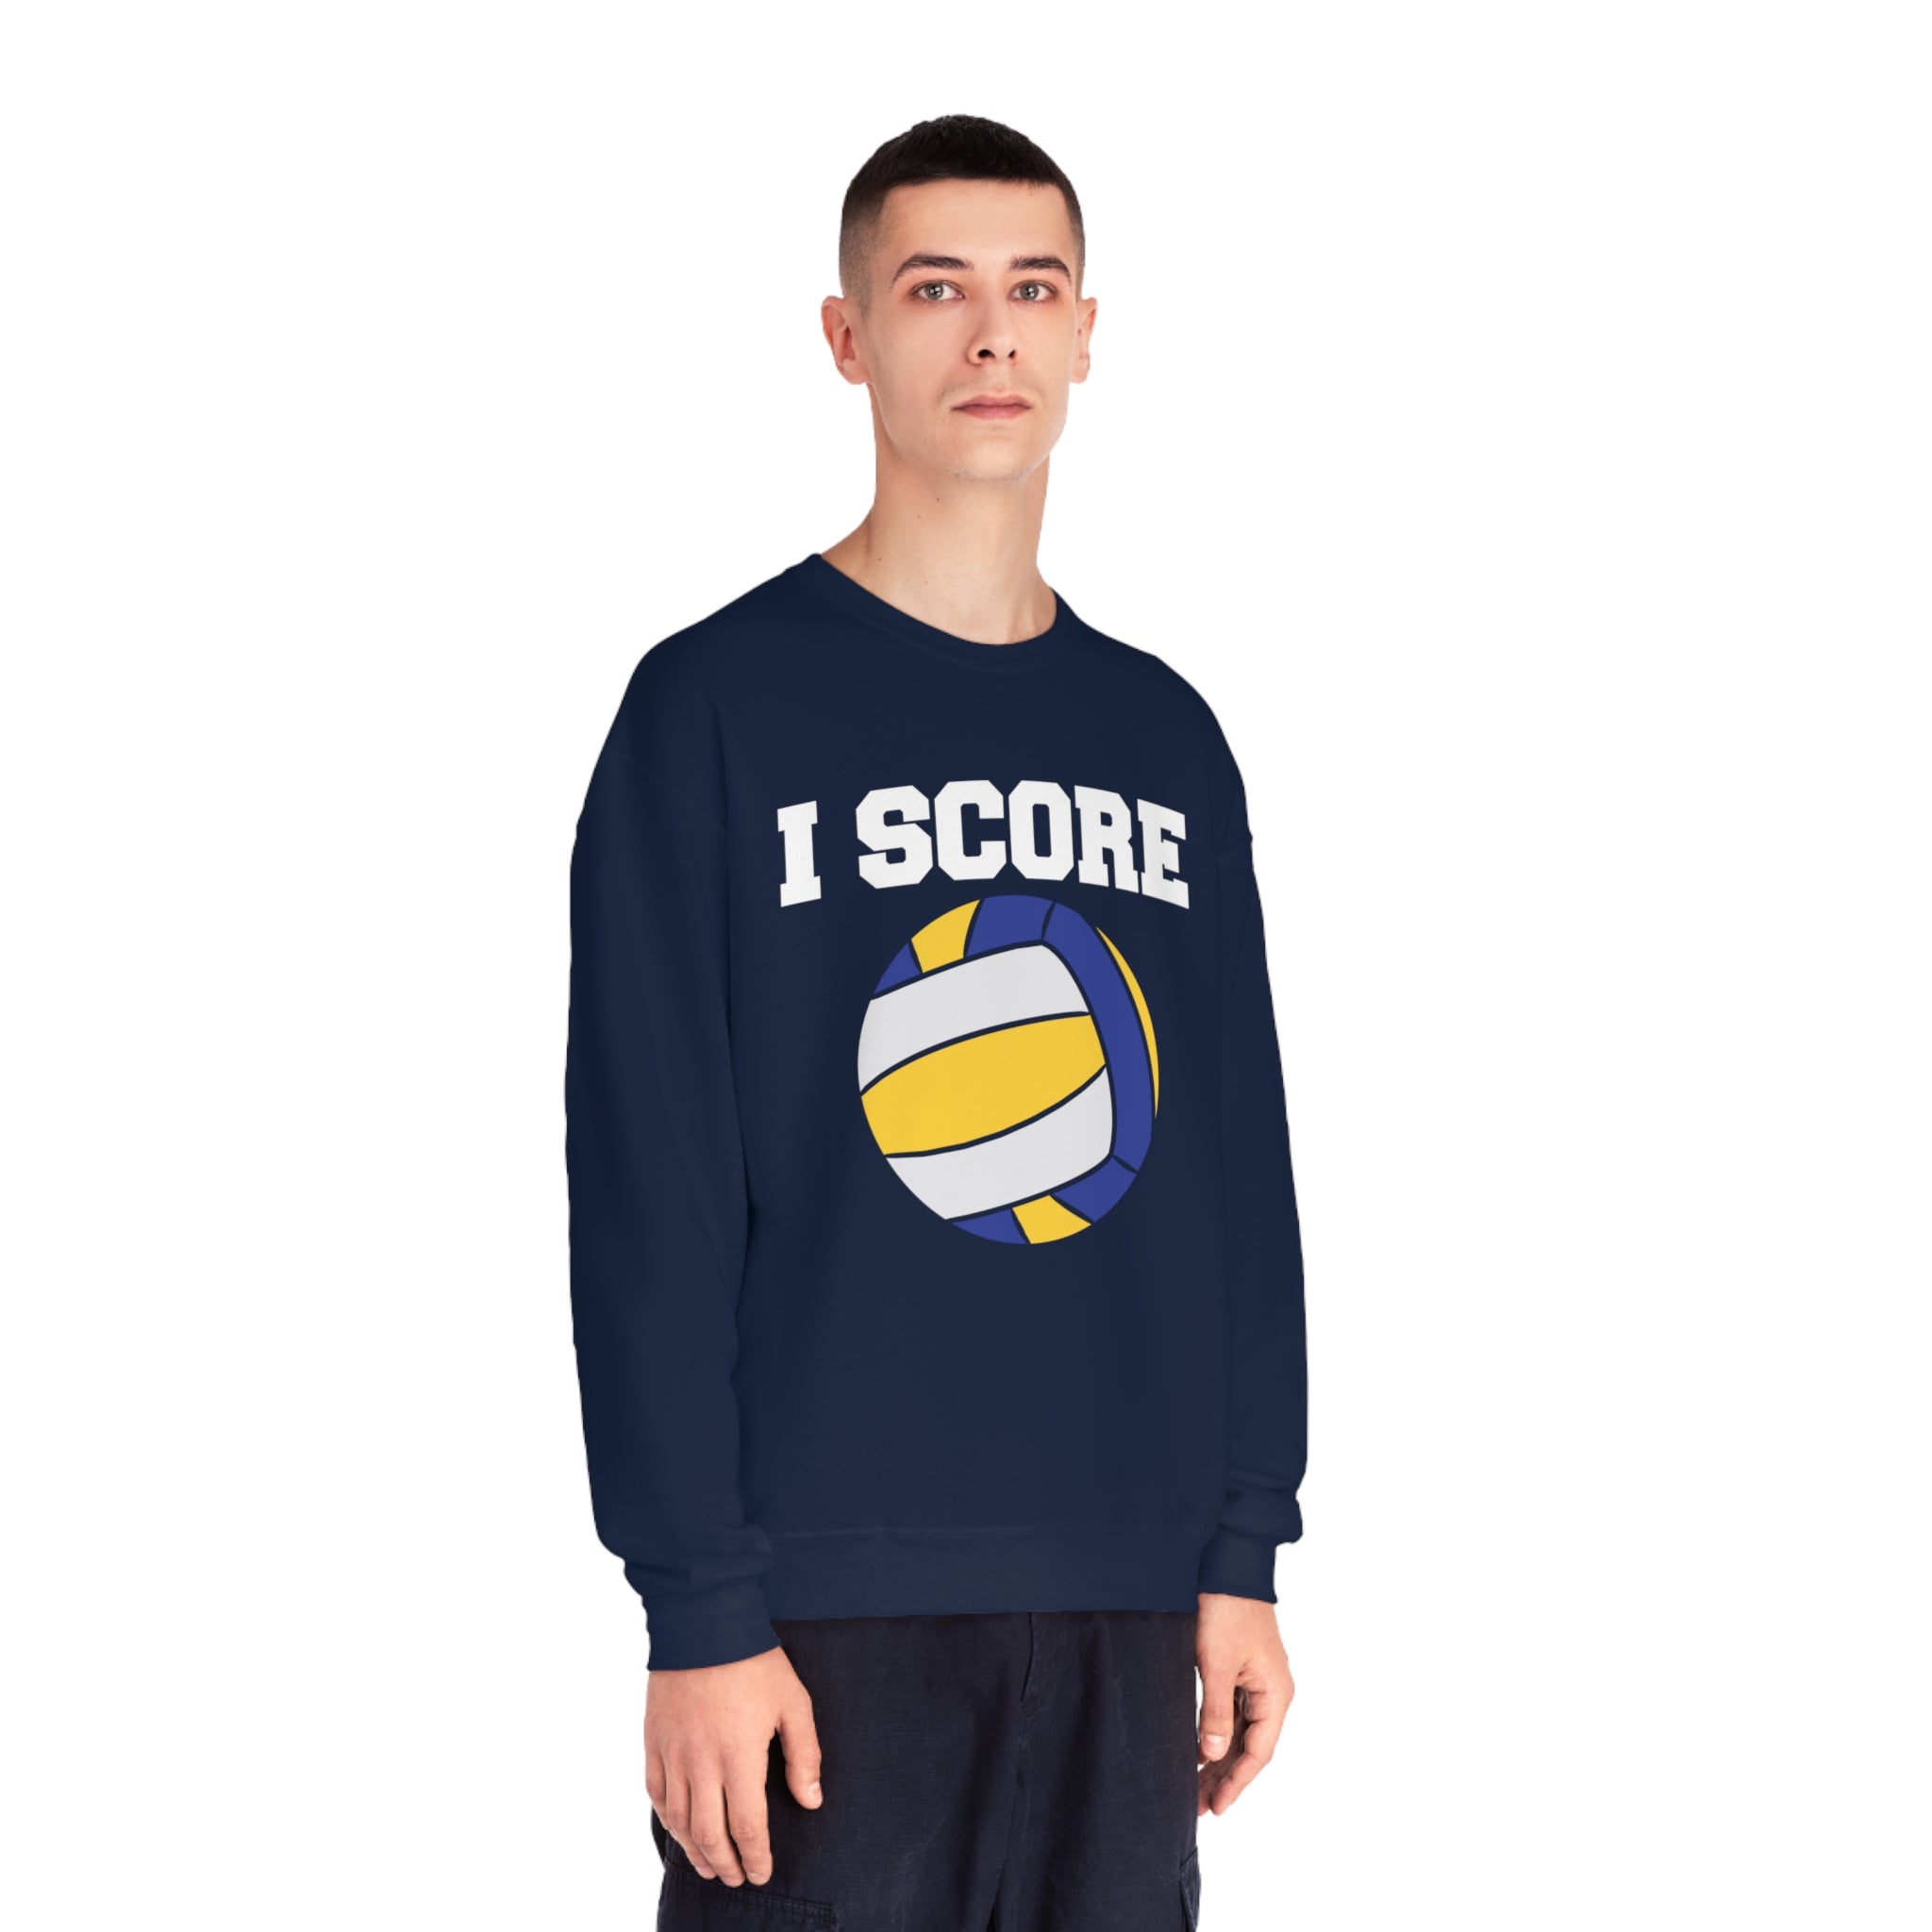 I Score Unisex Sweatshirt